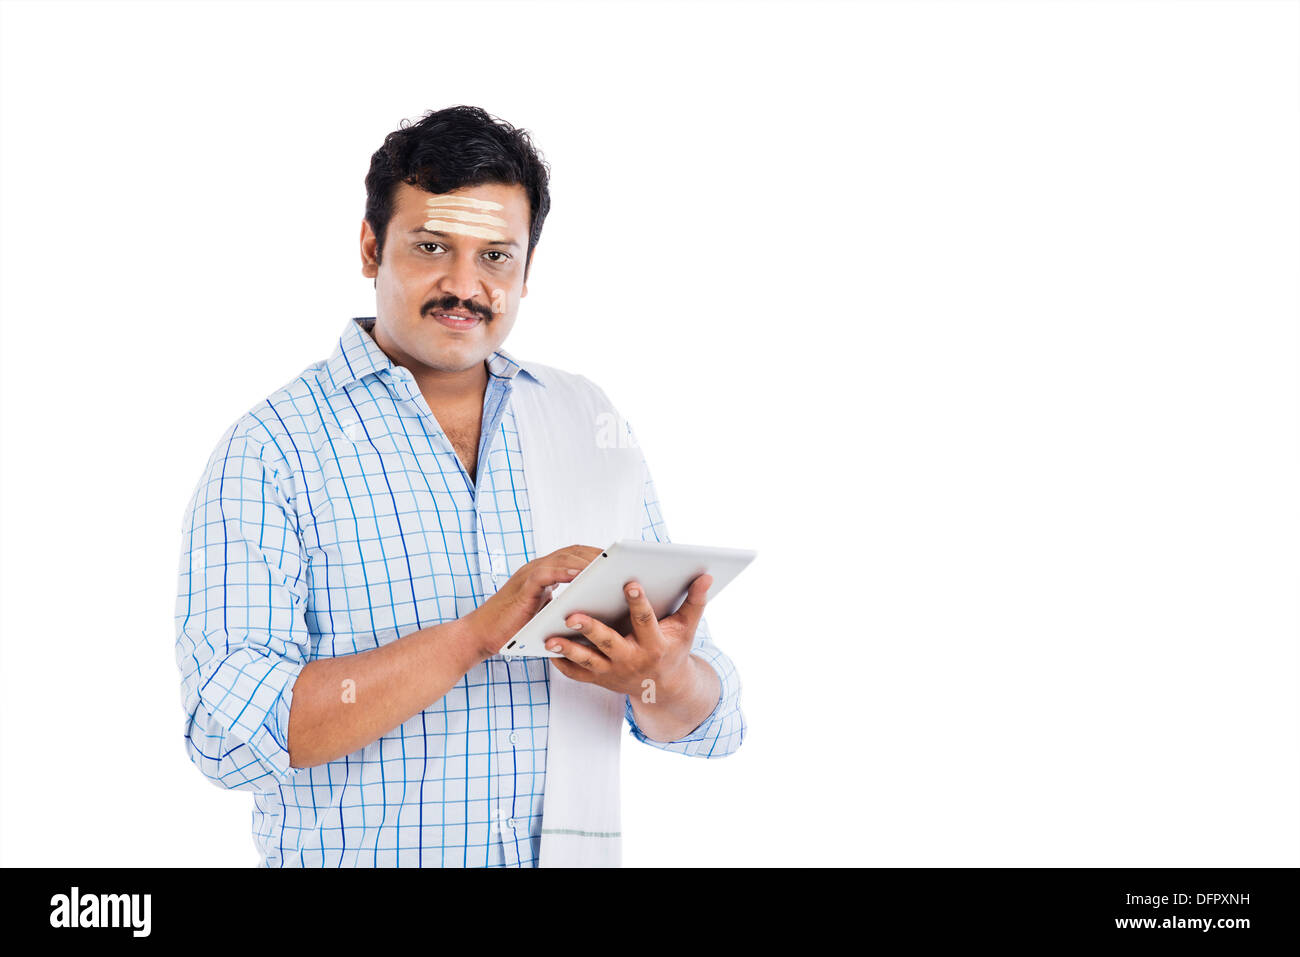 Sud indiane uomo utilizzando una tavoletta digitale Foto Stock